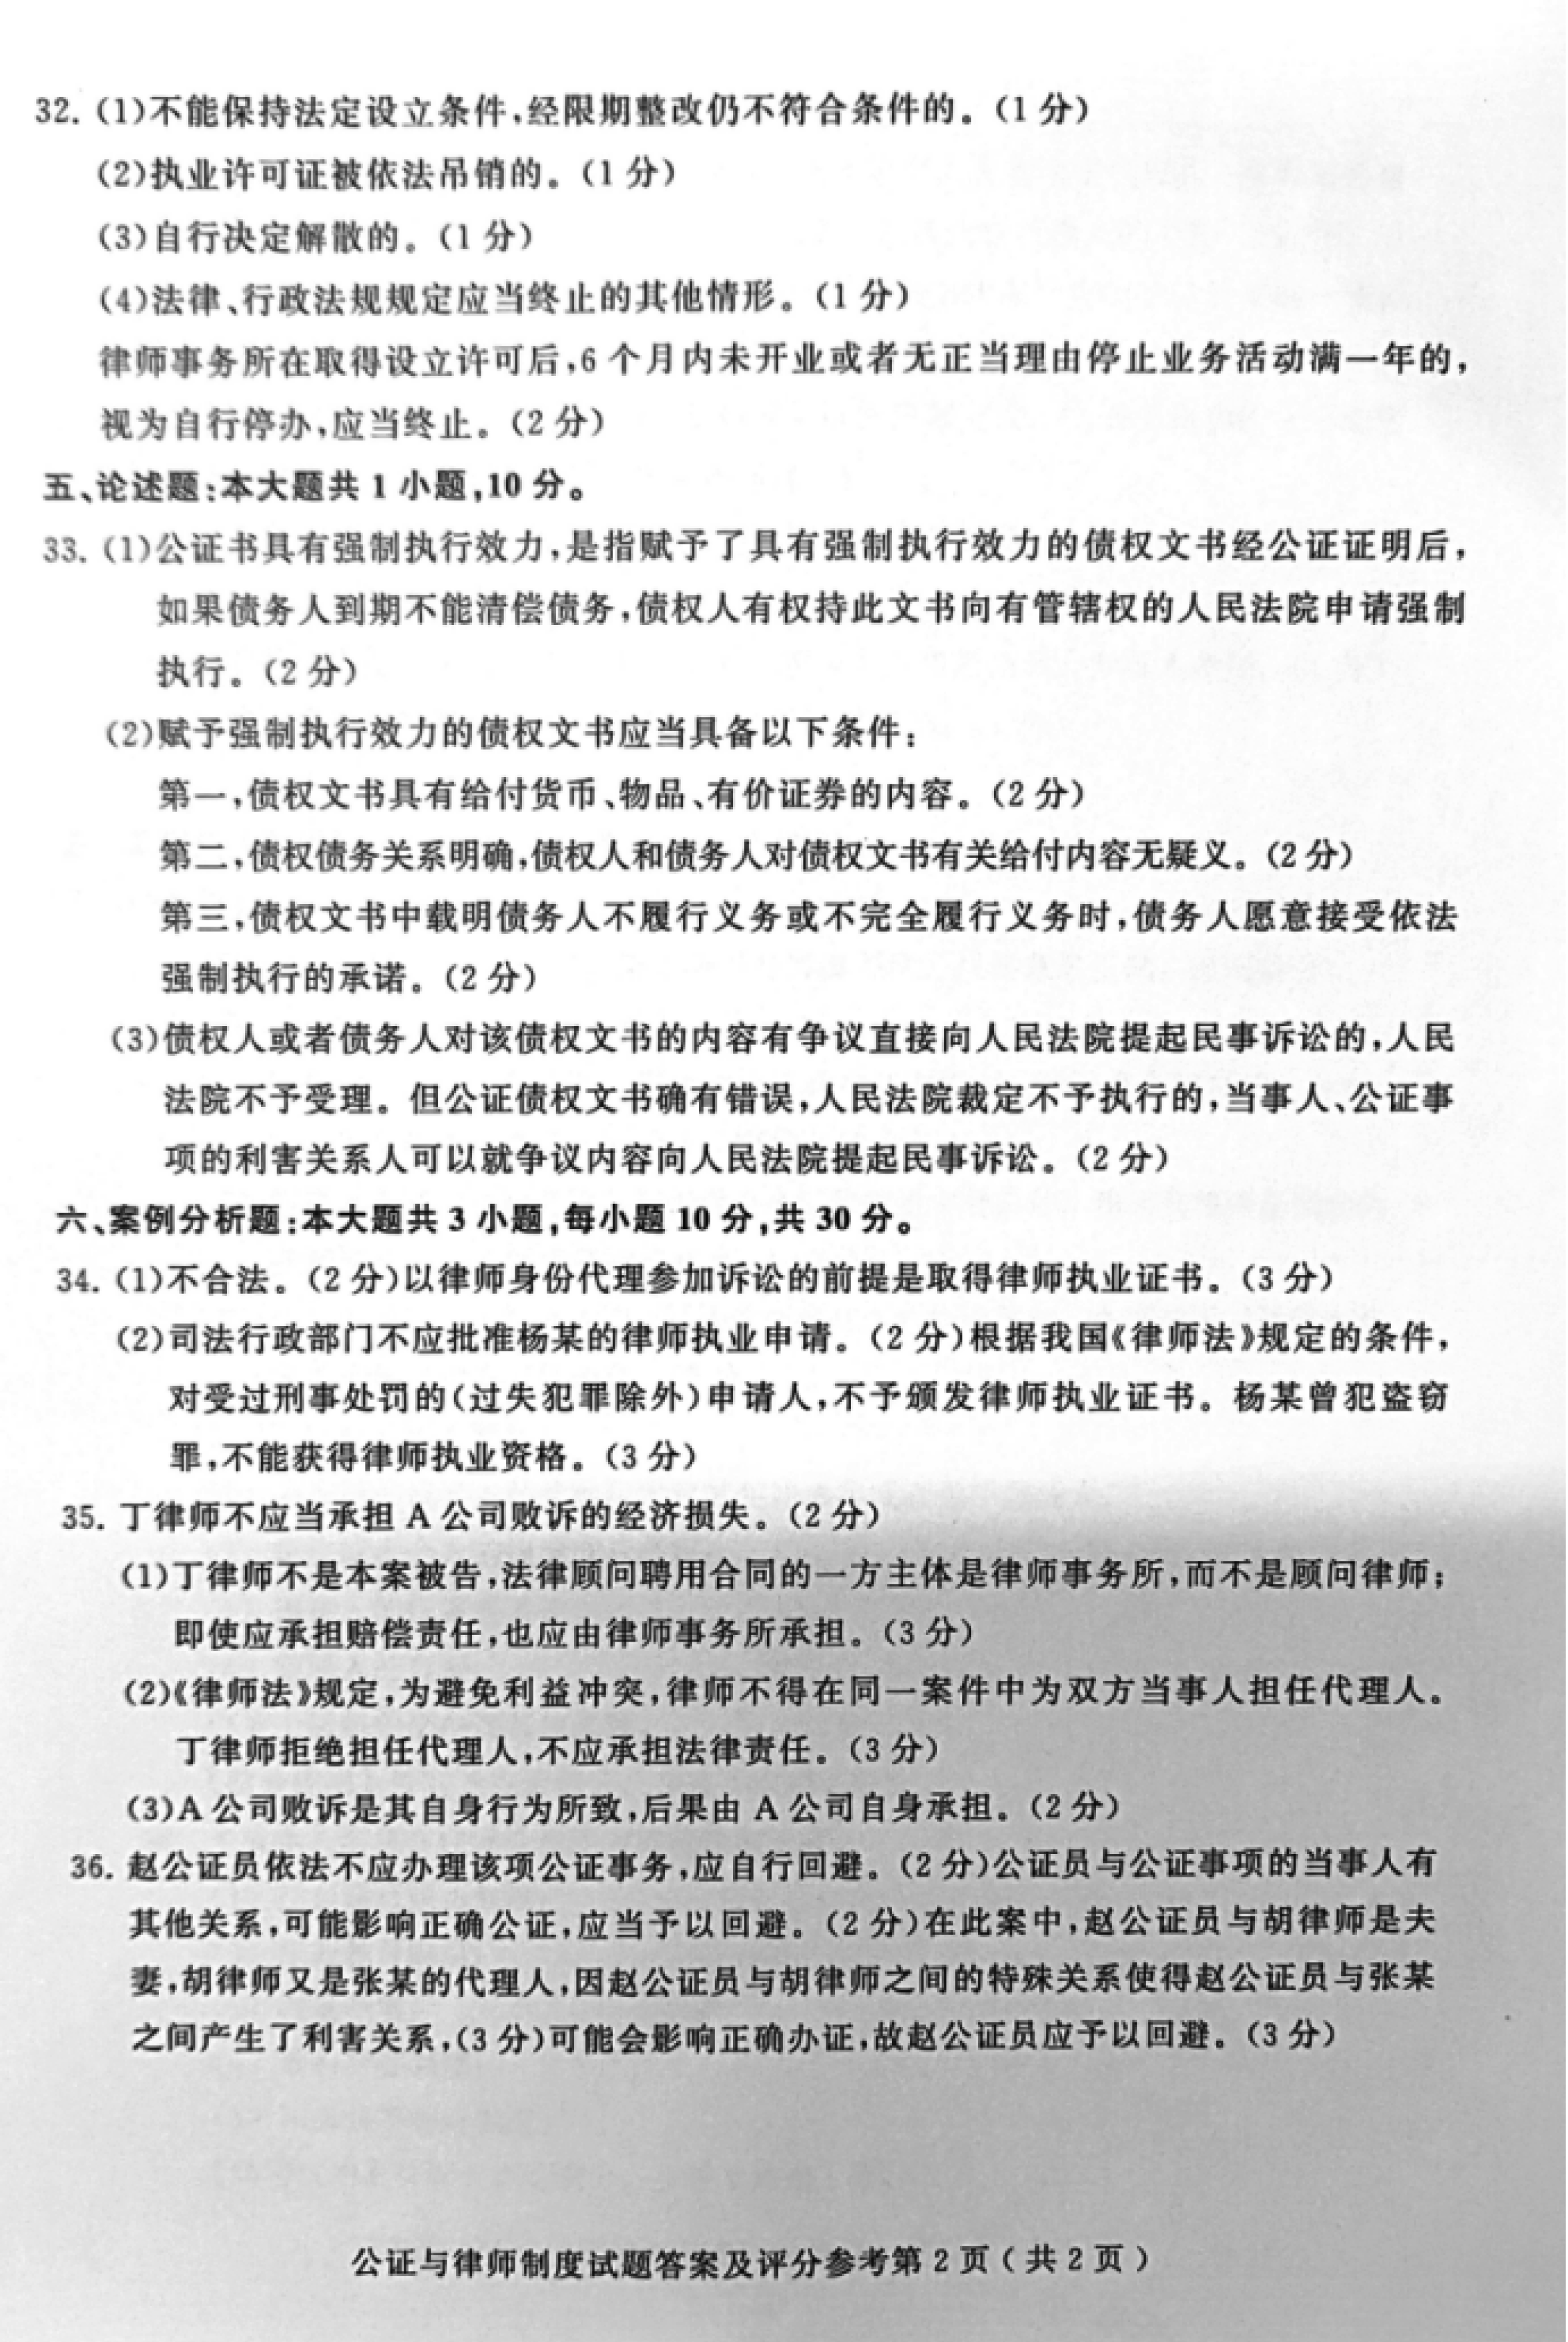 2019年04月贵州自考00259公证与律师制度真题及答案